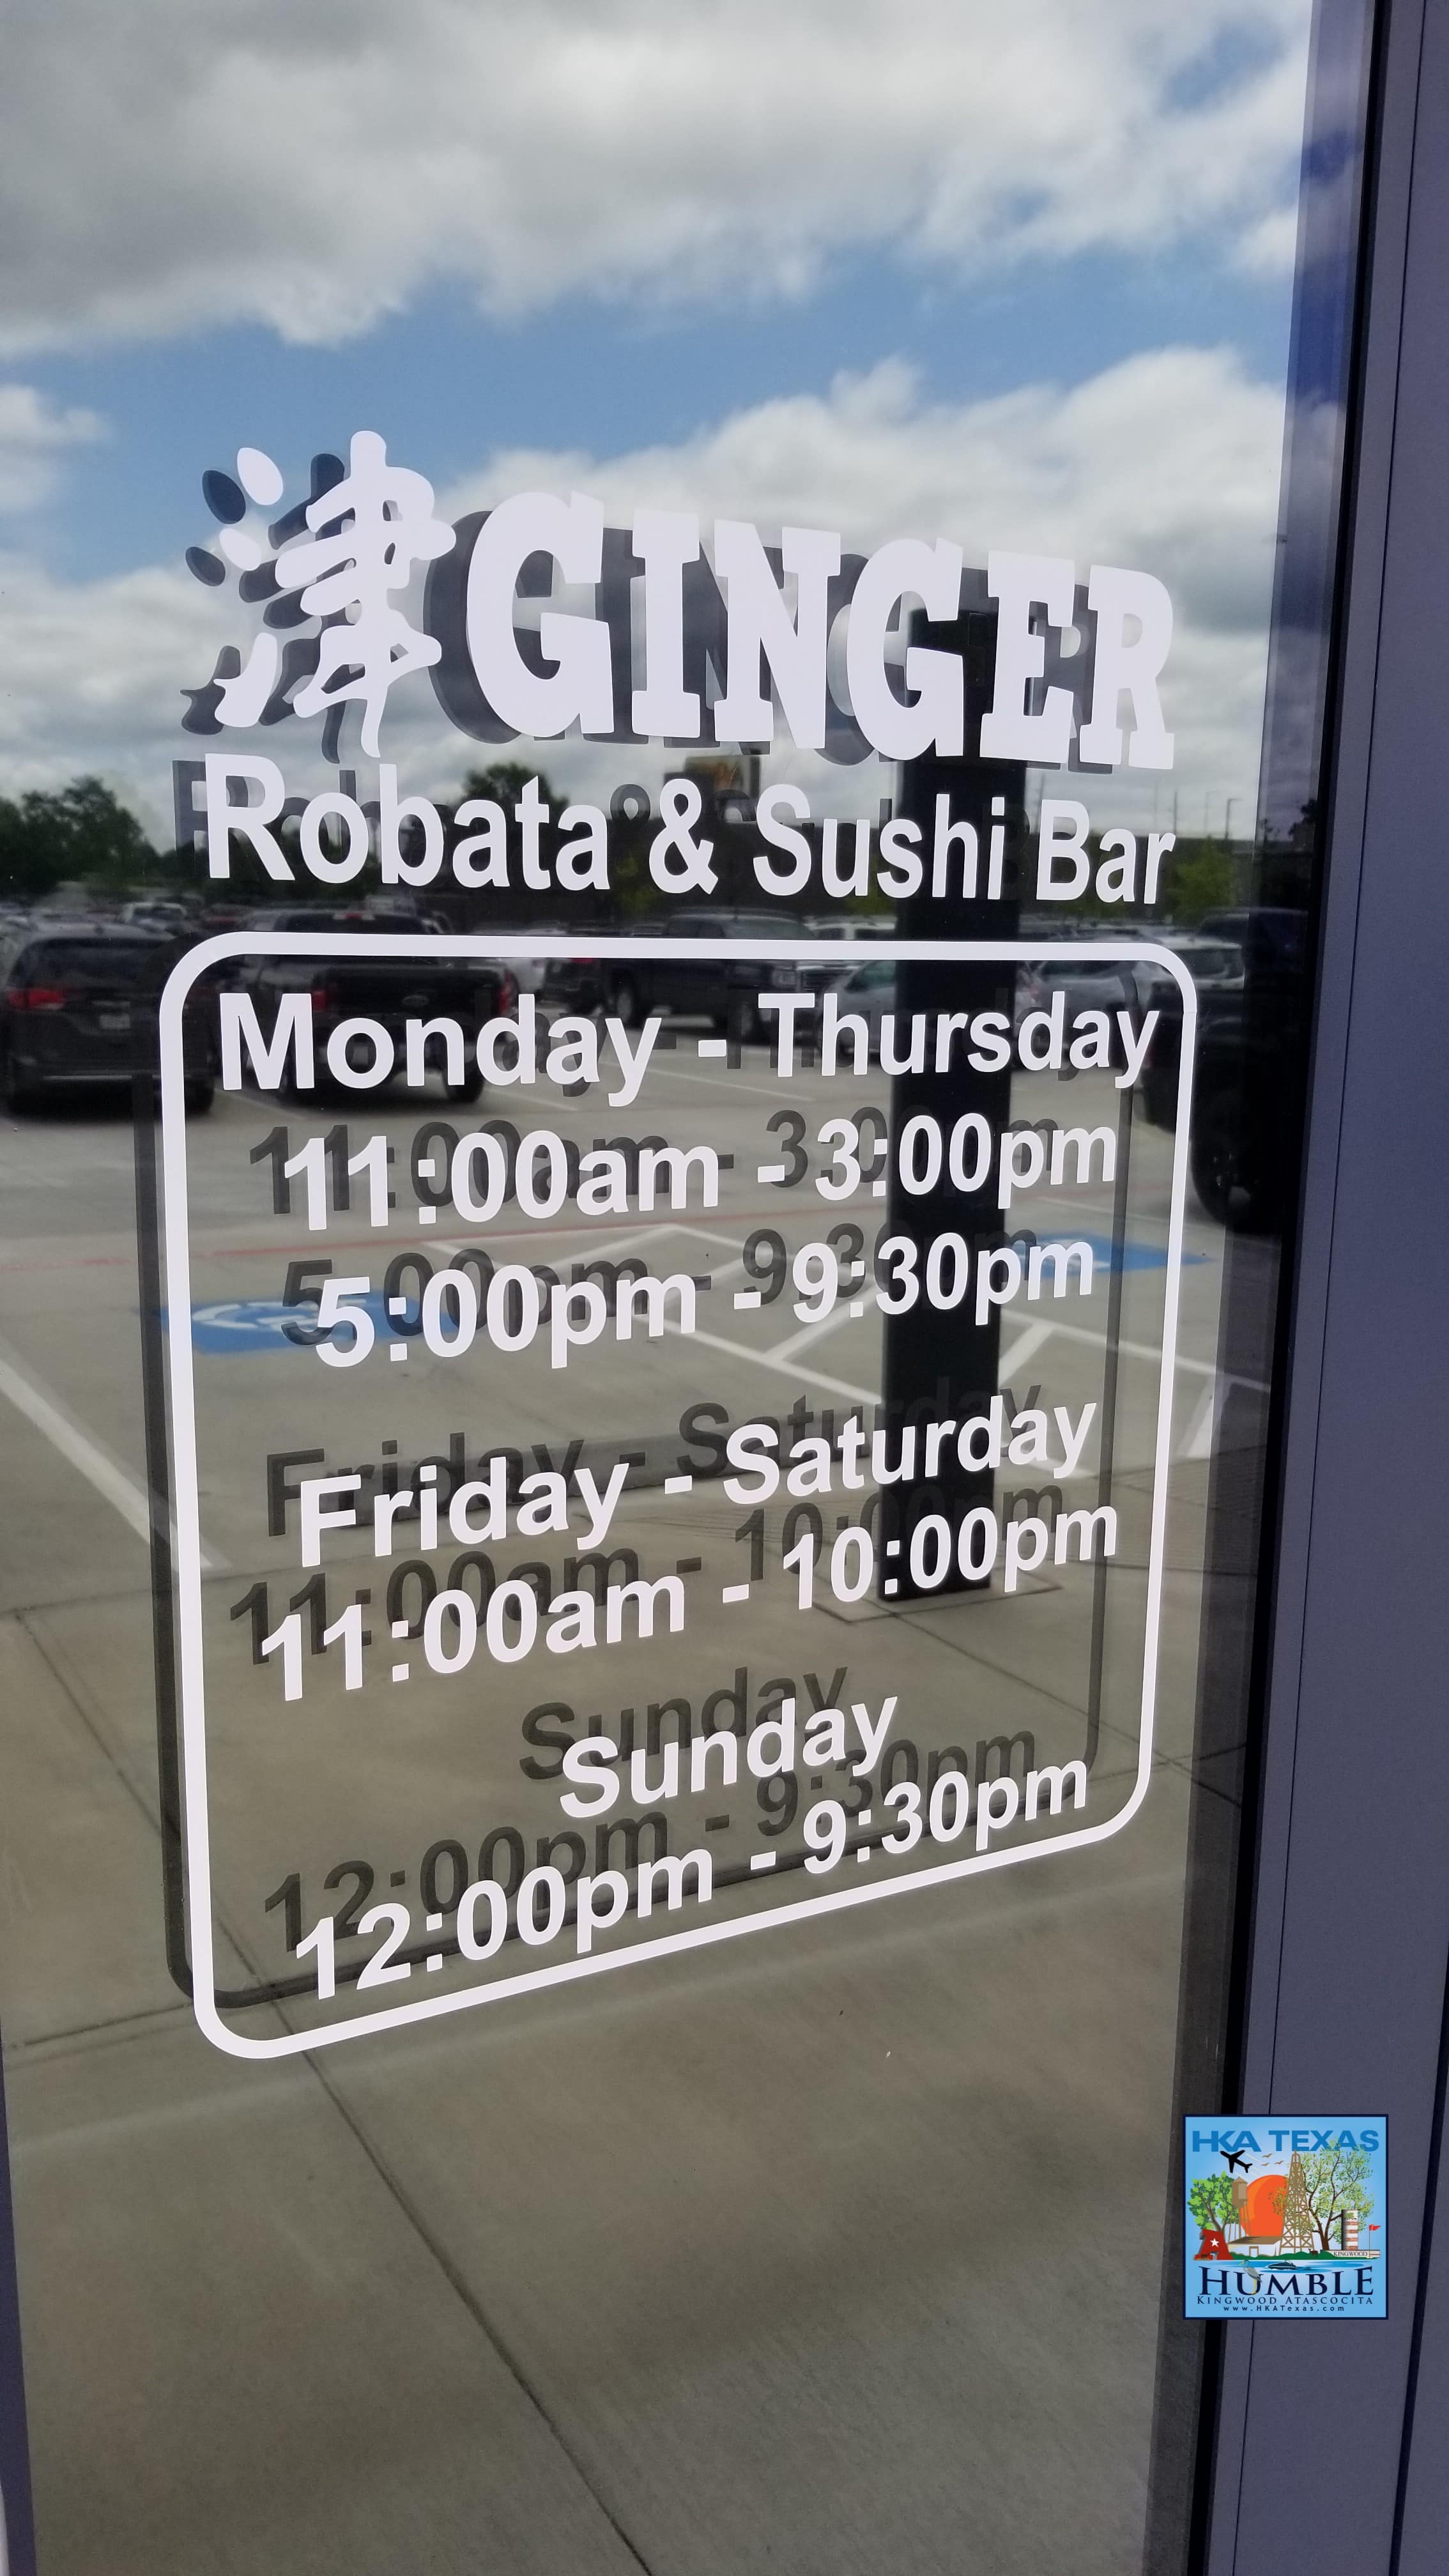 Ginger Robata & Sushi Bar